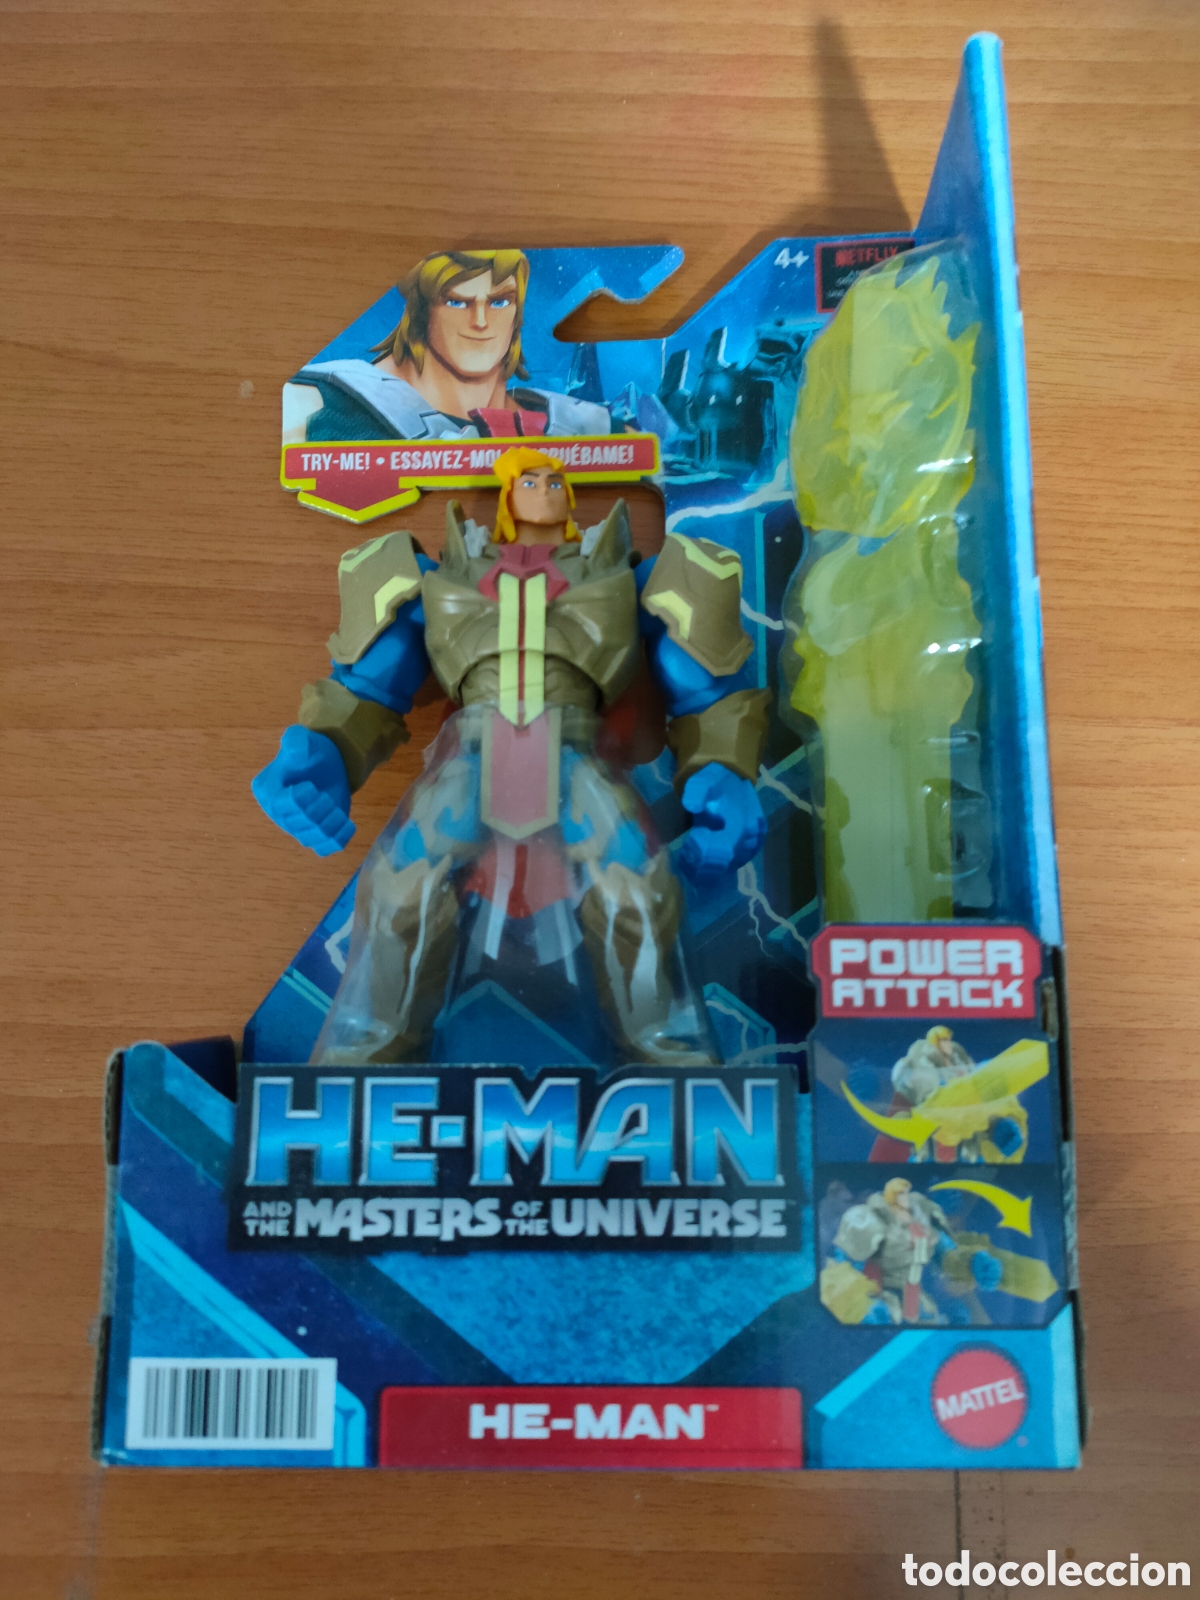 Mattel e Netflix se unem e relançam coleção de bonecos do He-man